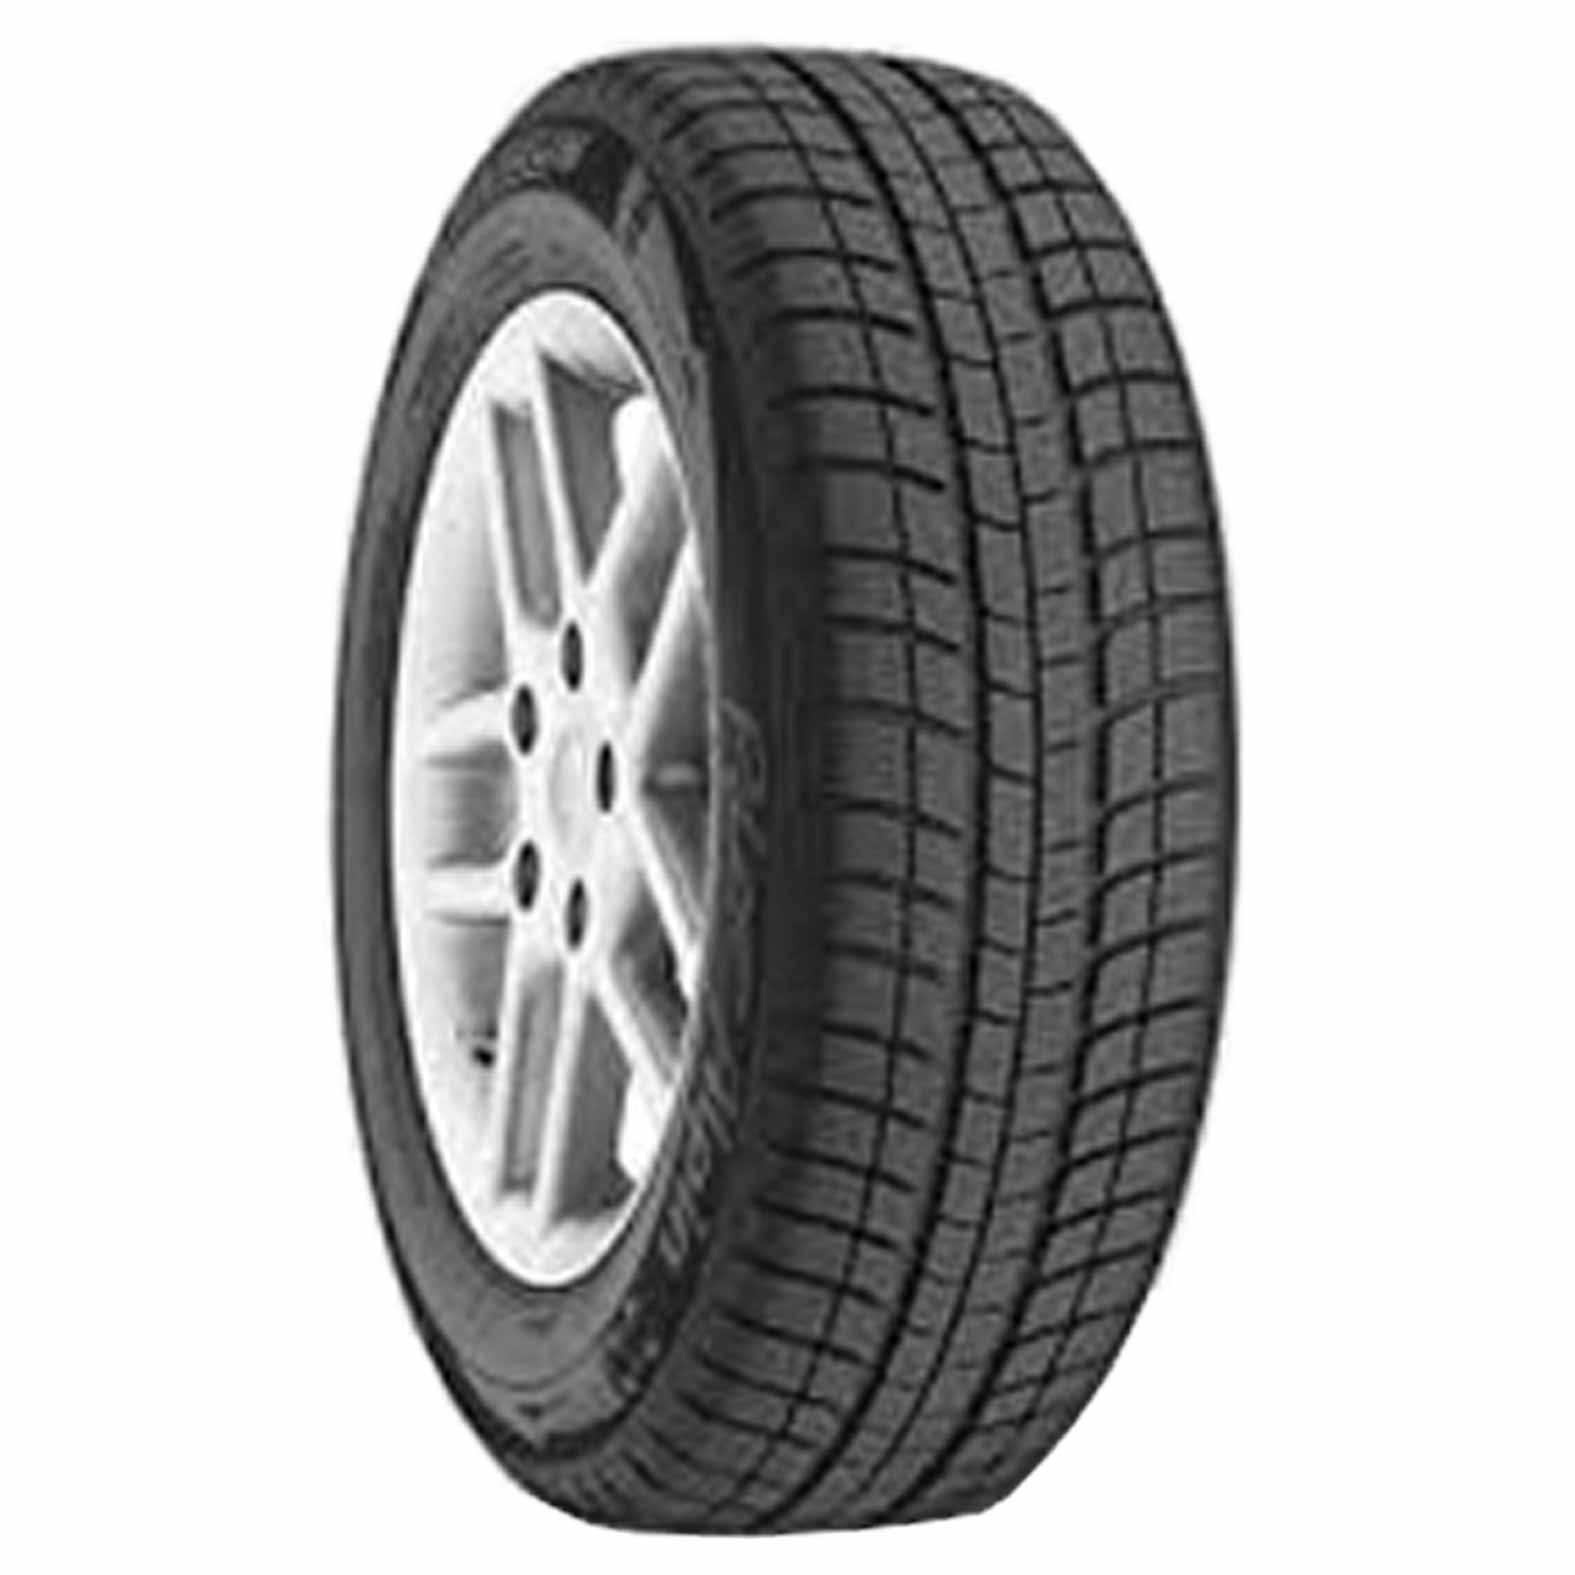 Michelin Latitude Alpin LA2 Tires for Winter | Kal Tire